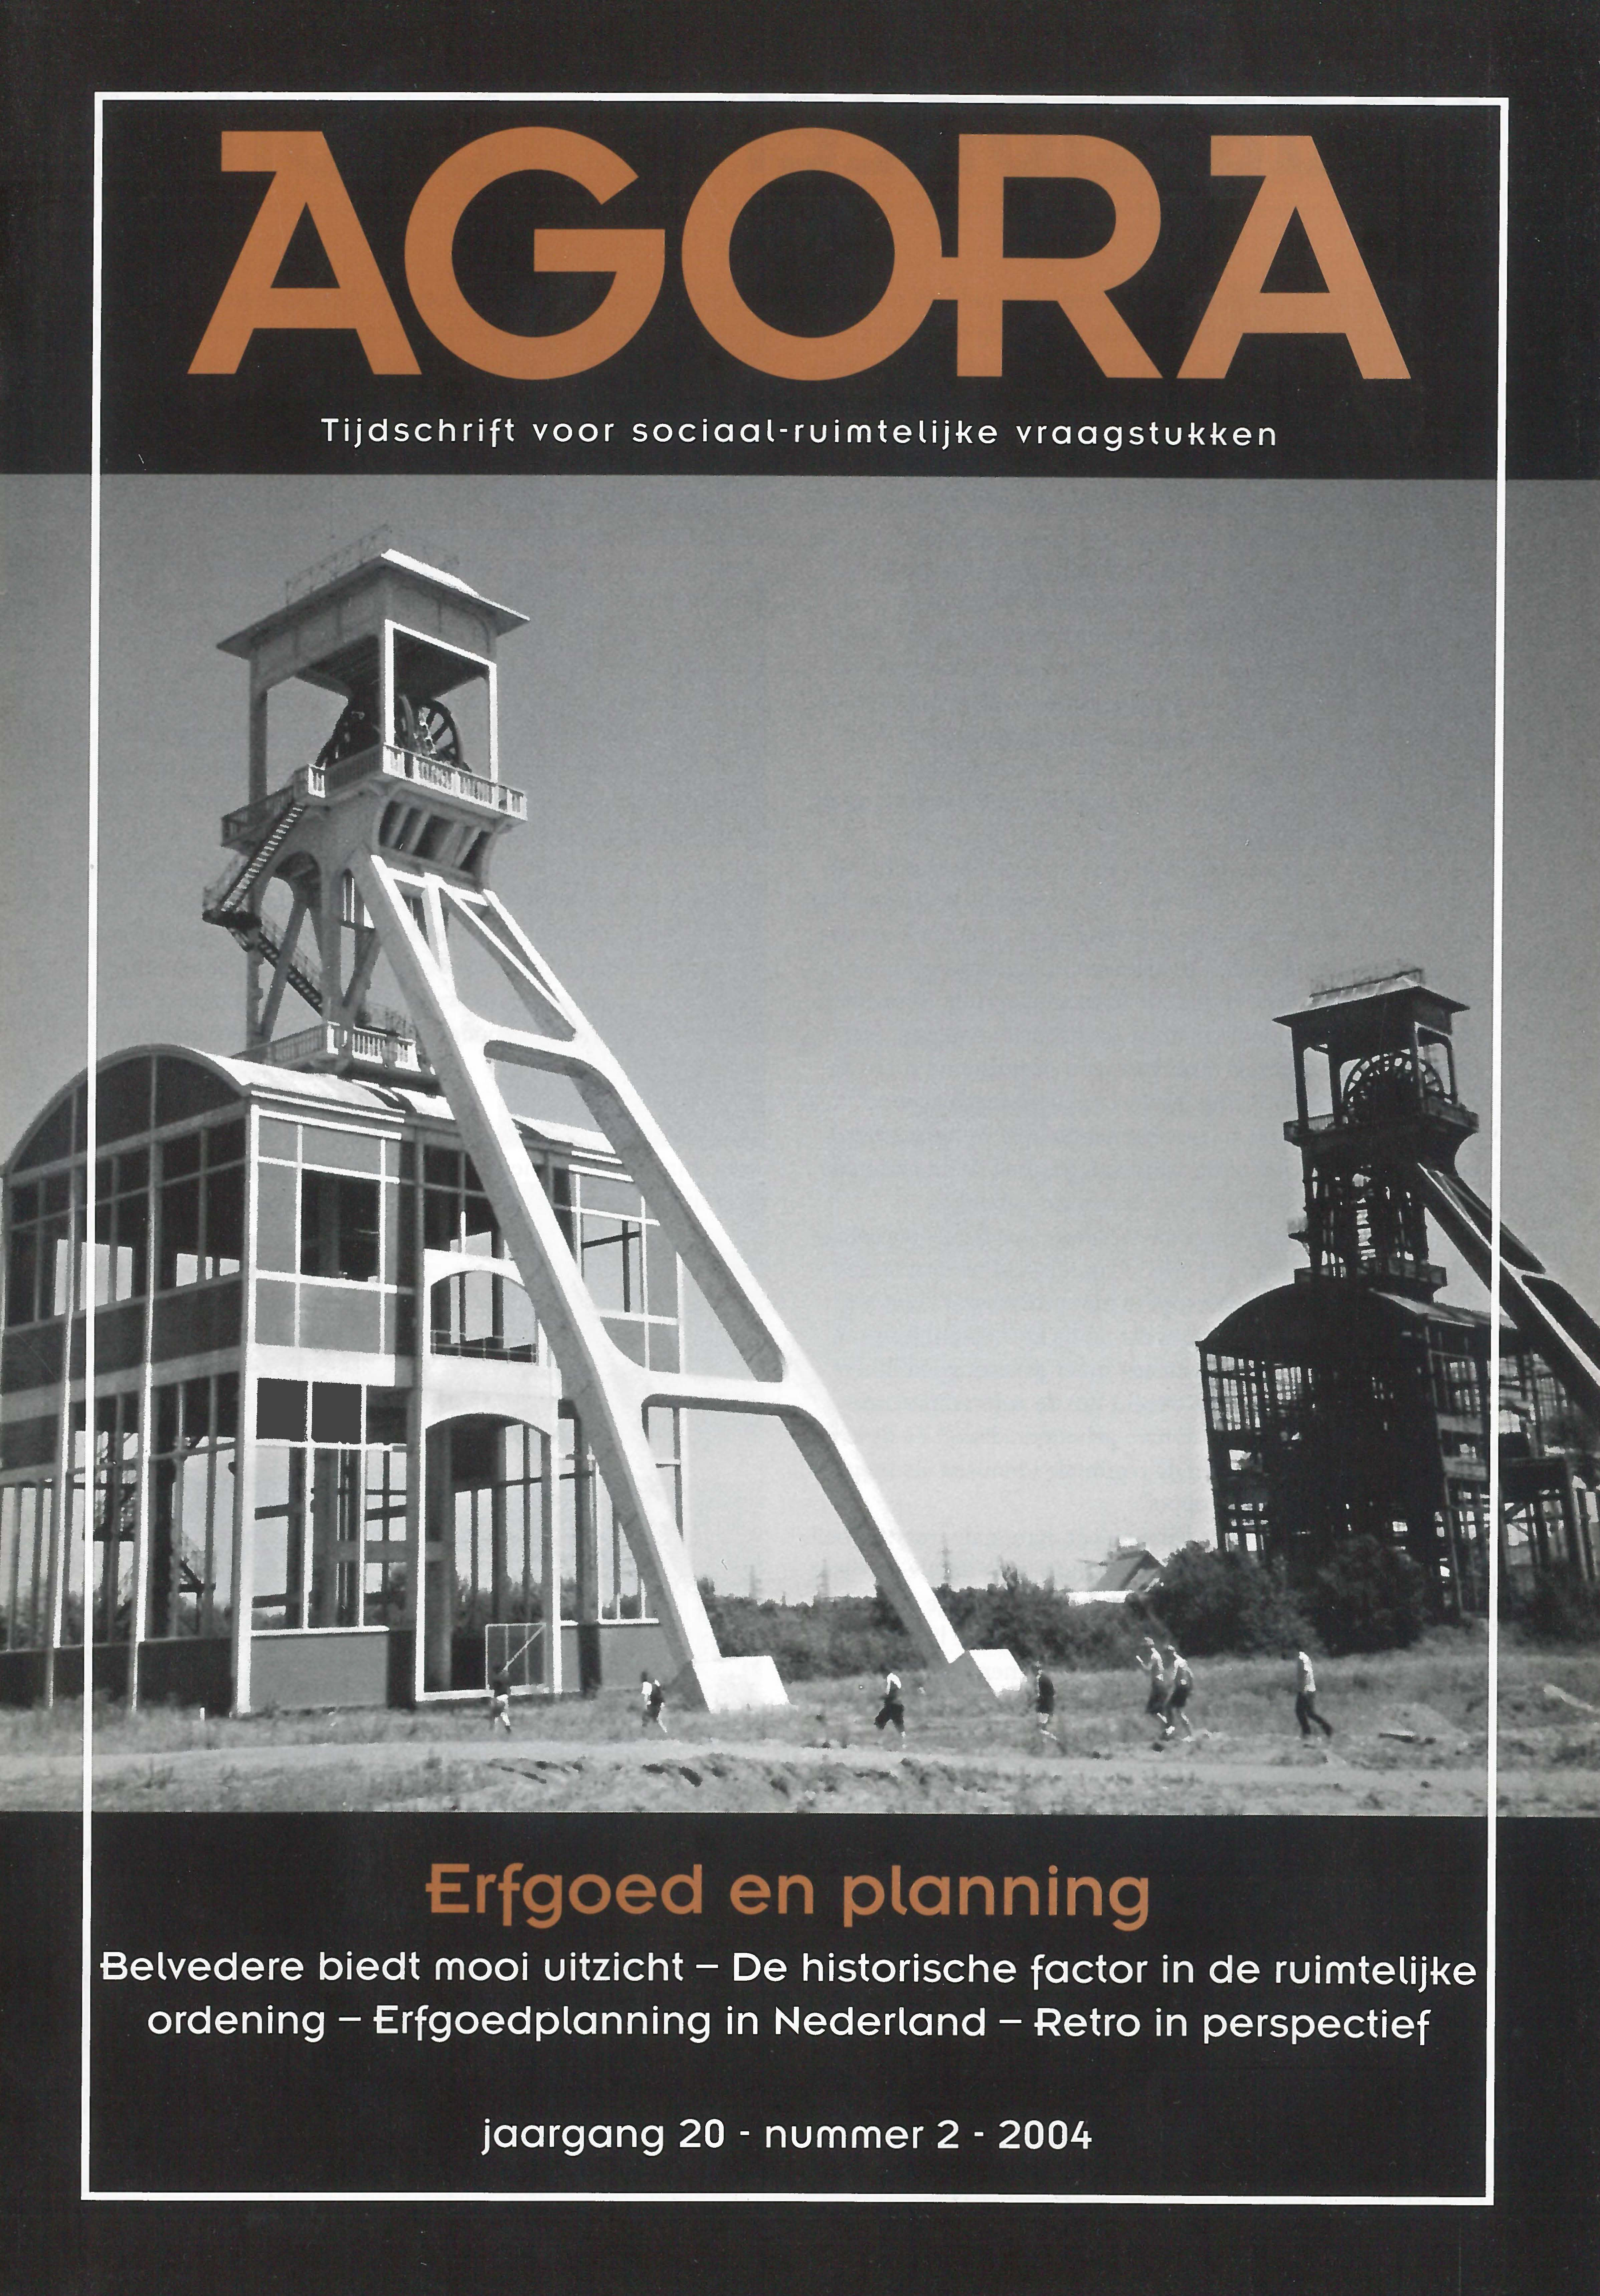 Erfgoedplanning in Nederland: Een incomplete paradigmawisseling